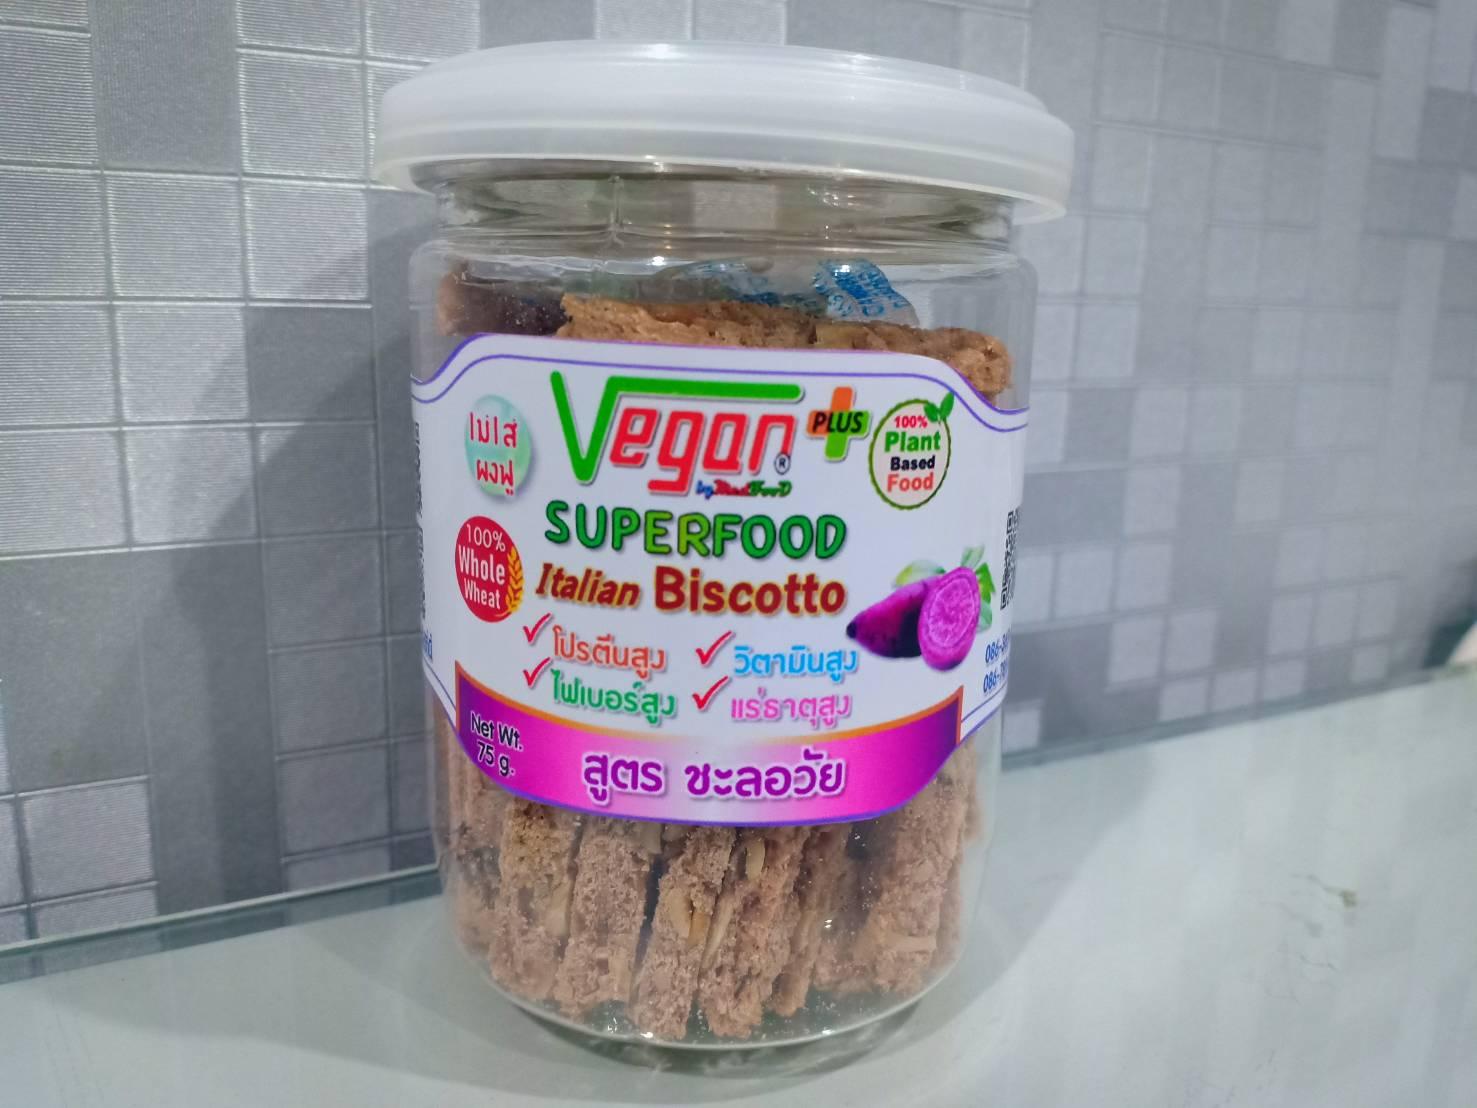 Super Food Biscotto สูตรชะลอวัย ขนาด 65 กรัม #เจ #มังสวิรัติ #วีแกน #Vegan #SuperFood